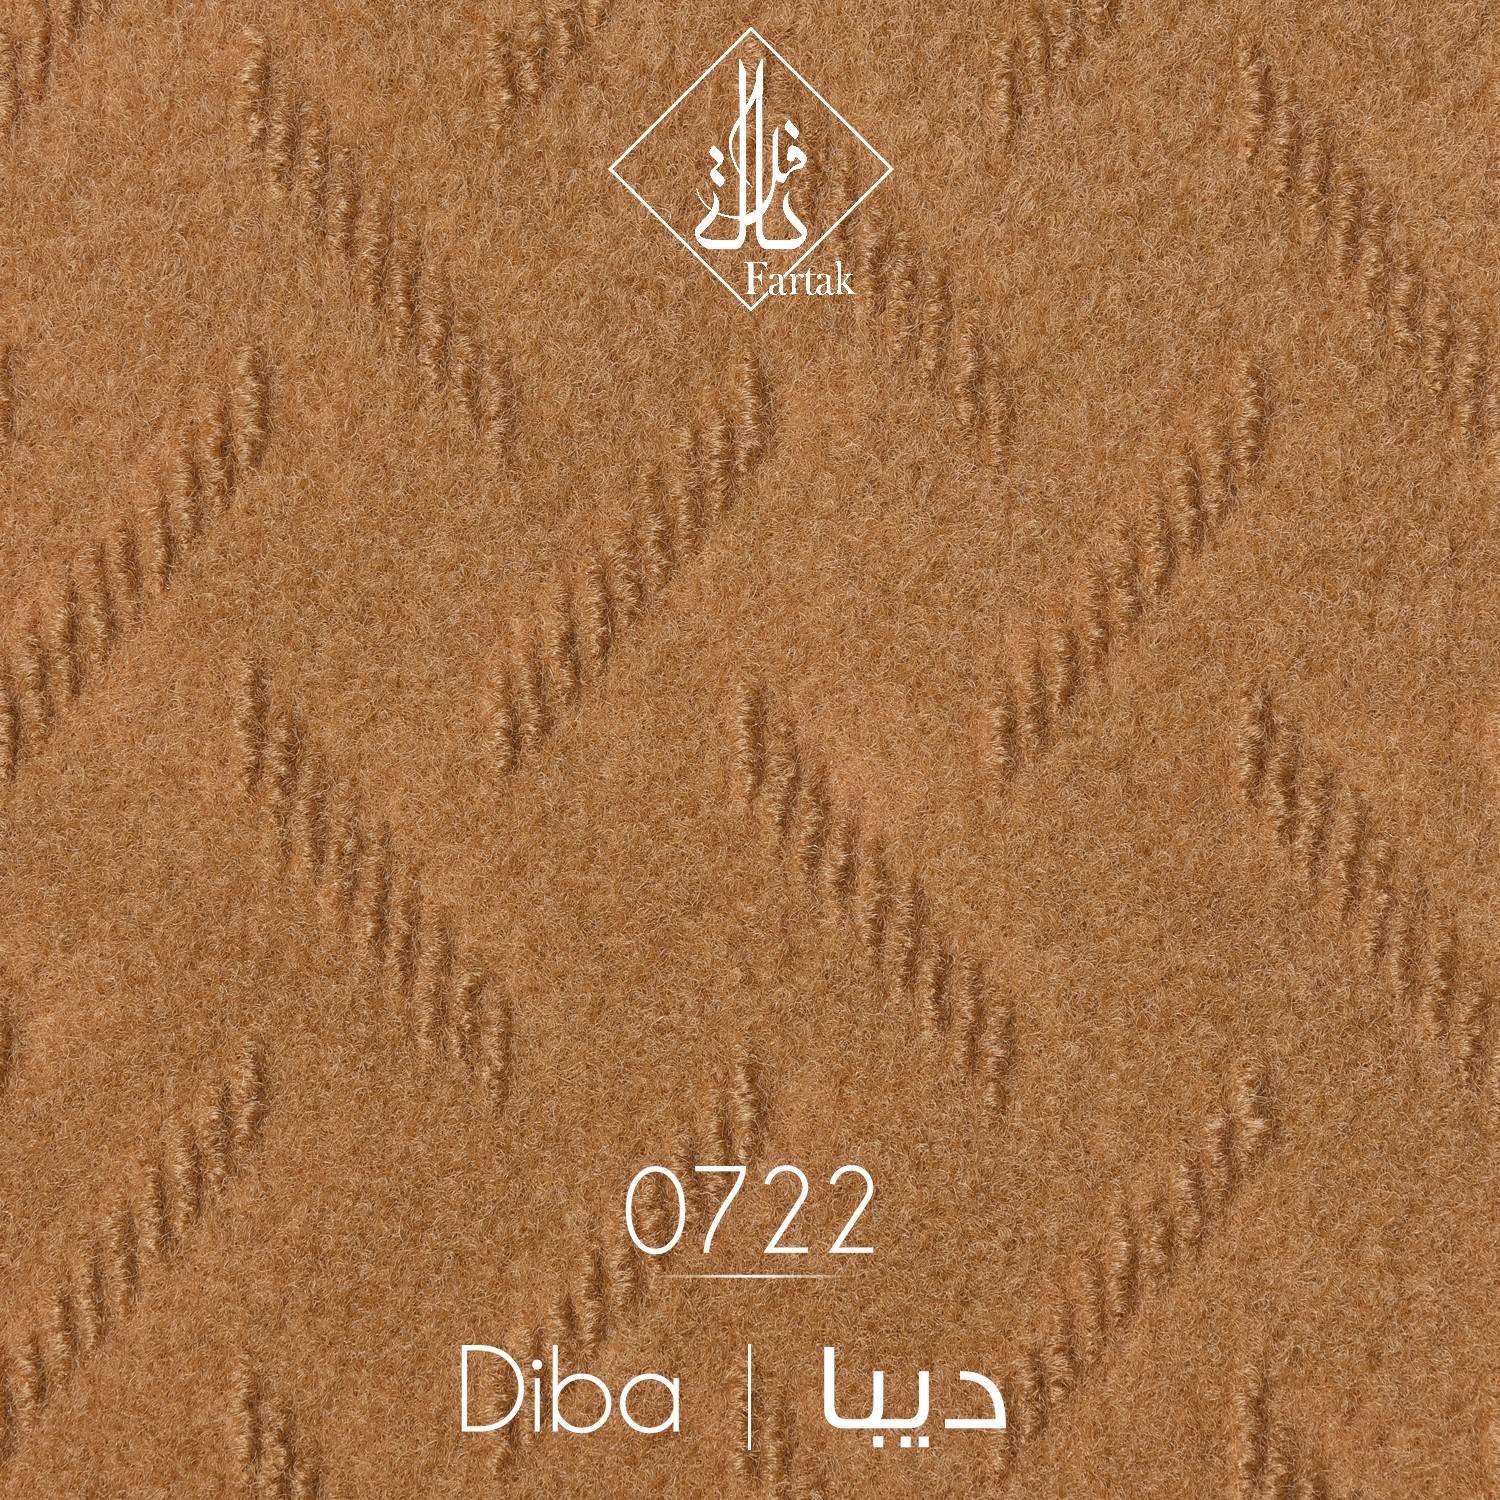 موکت ظریف مصور طرح دیبا کد ۰۷۲2